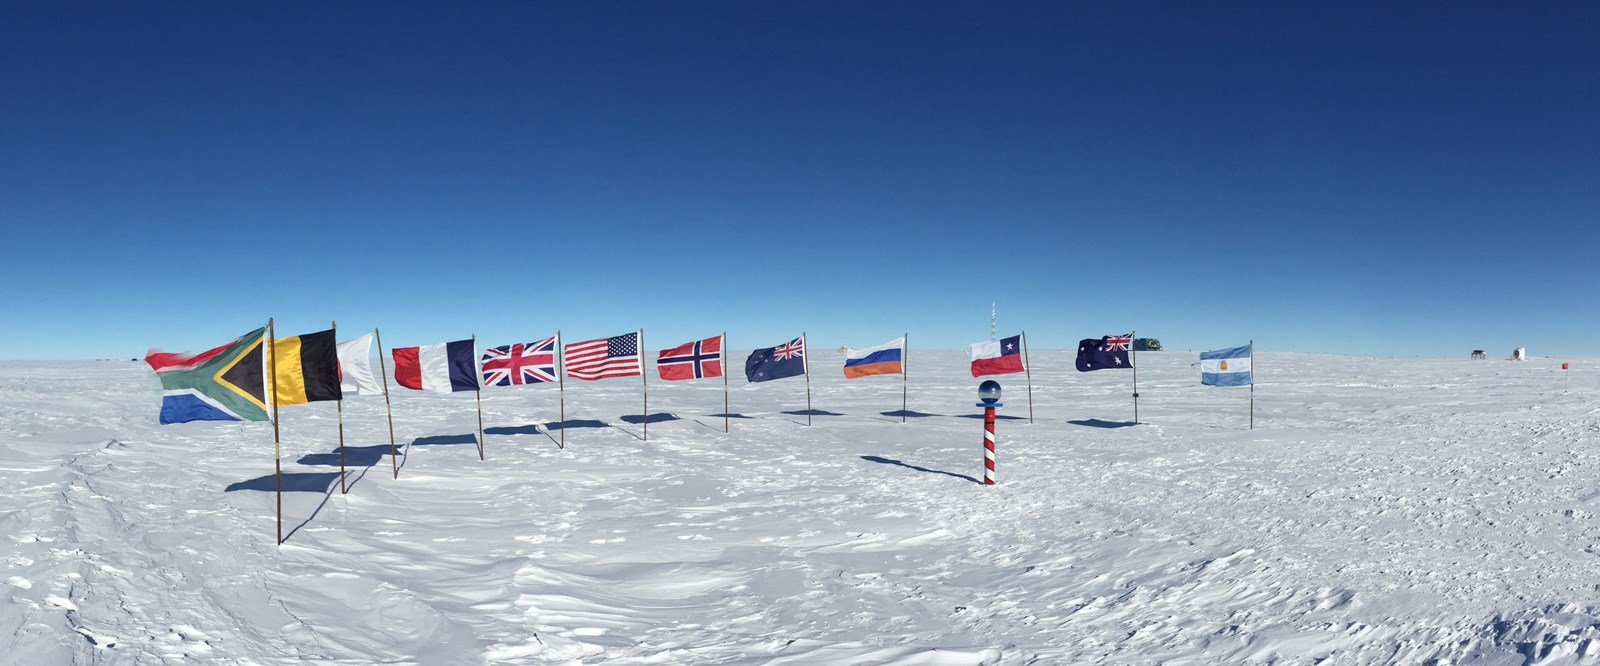 10 unglaubliche Fakten über das Leben am Südpol